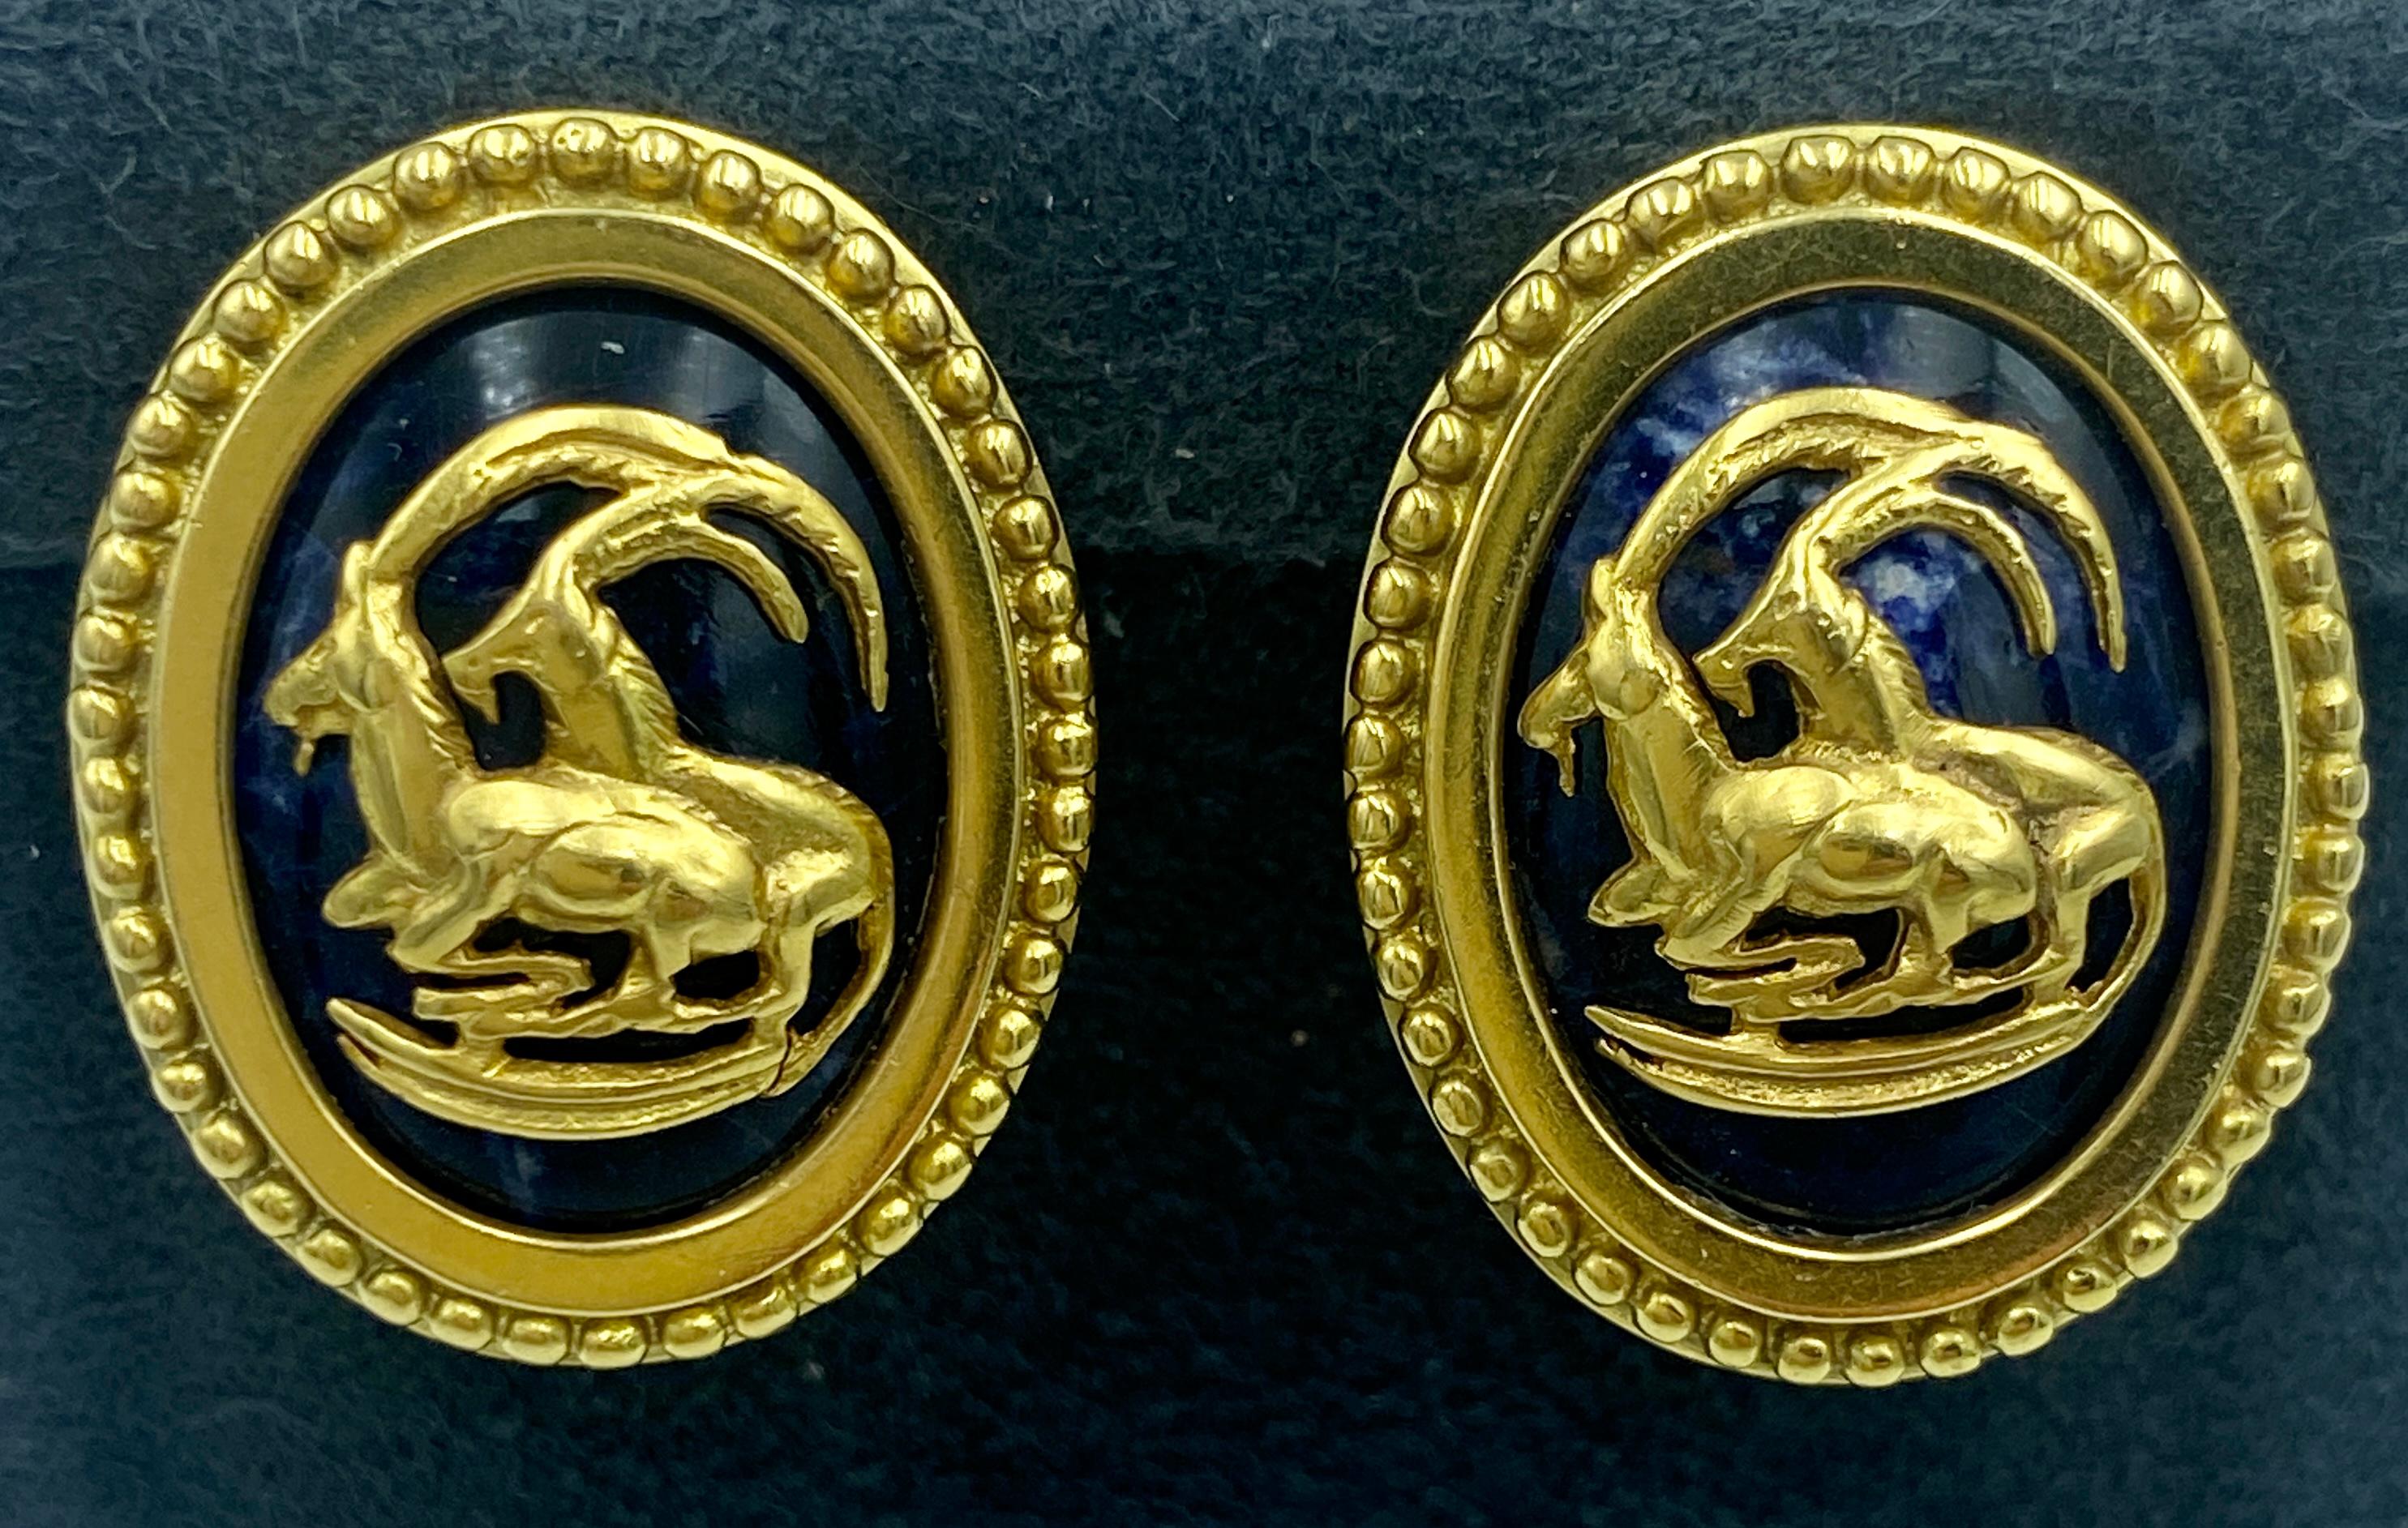 Diese Lalaounis-Ohrclips aus den 1970er Jahren haben die Form von Medaillons mit Bergziegenmotiven. Das aus 18 Karat Gold gefertigte Design ist um einen Cabochon aus Lapislazuli herum angeordnet.

Sie sind Teil eines Sets mit einem Armband, von dem